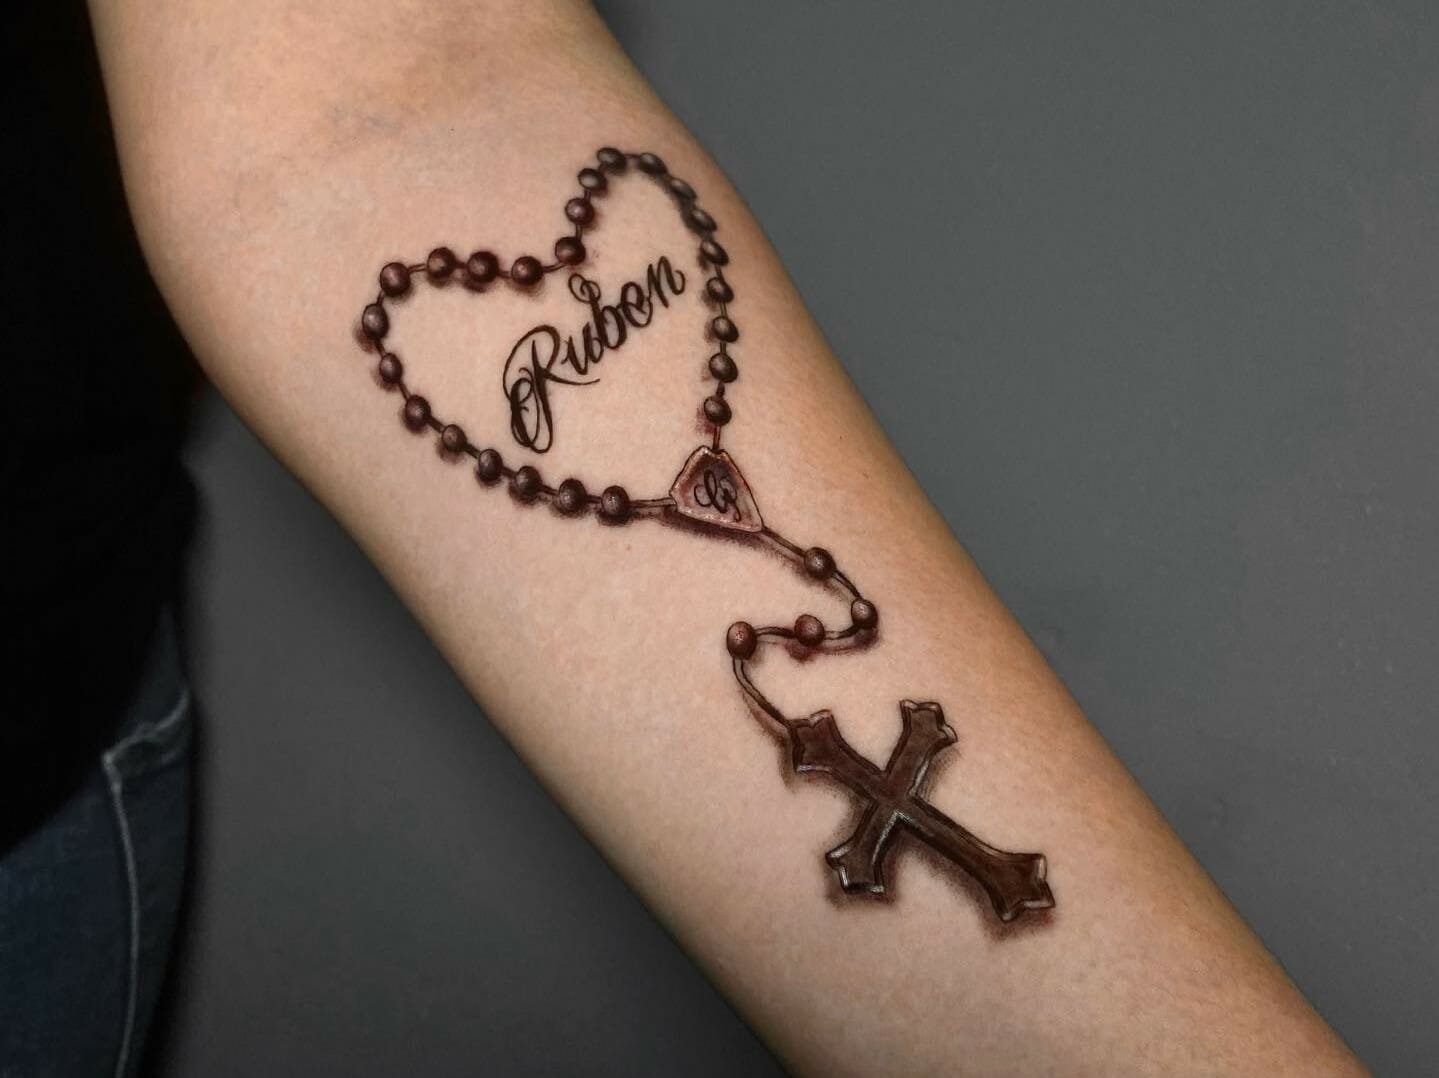 Can nuns have tattoos? - Christian Faith Guide